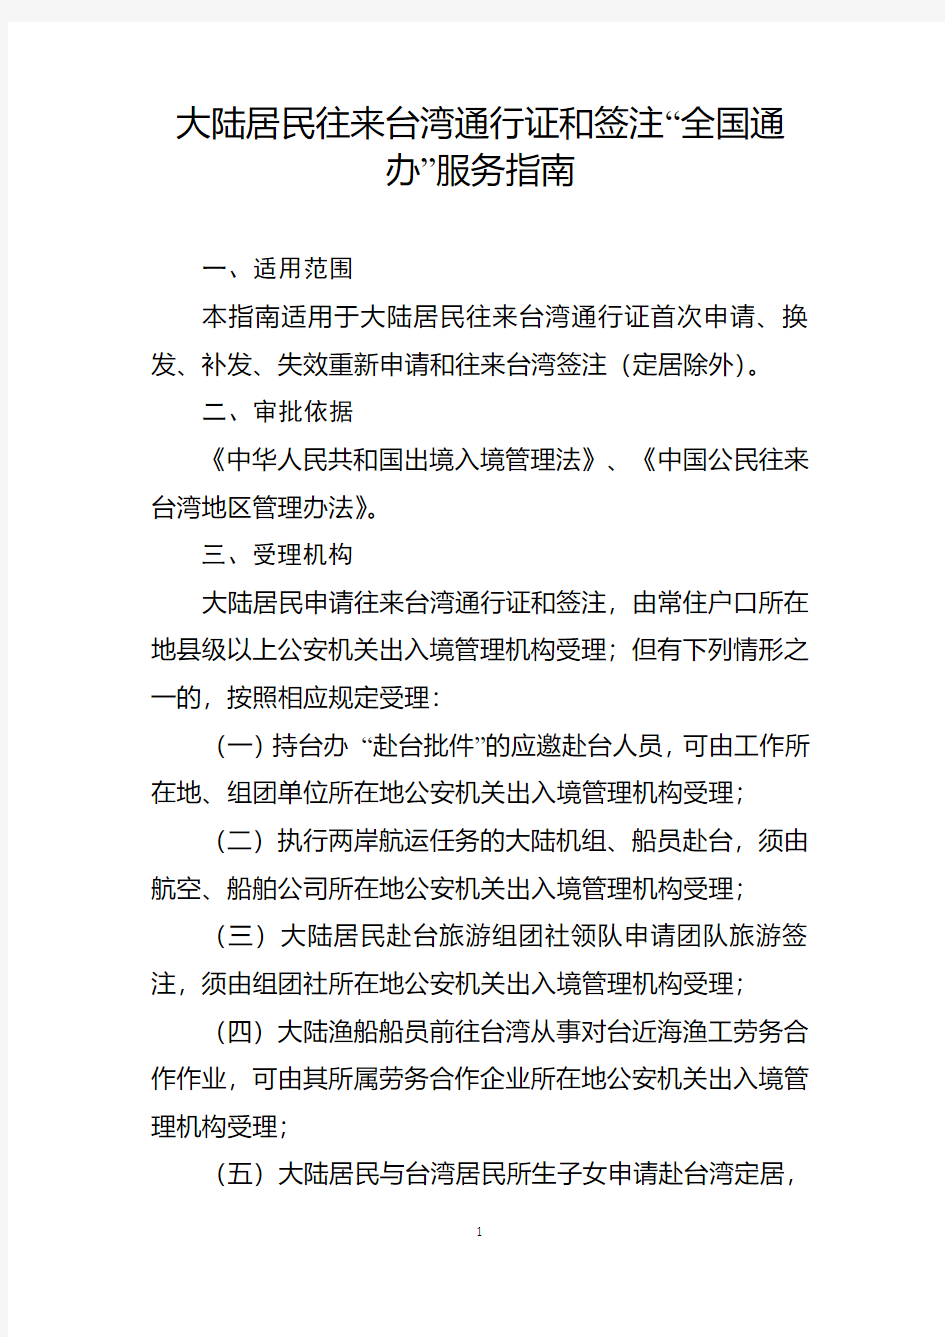 大陆居民往来台湾通行证和签注“全国通办”服务指南